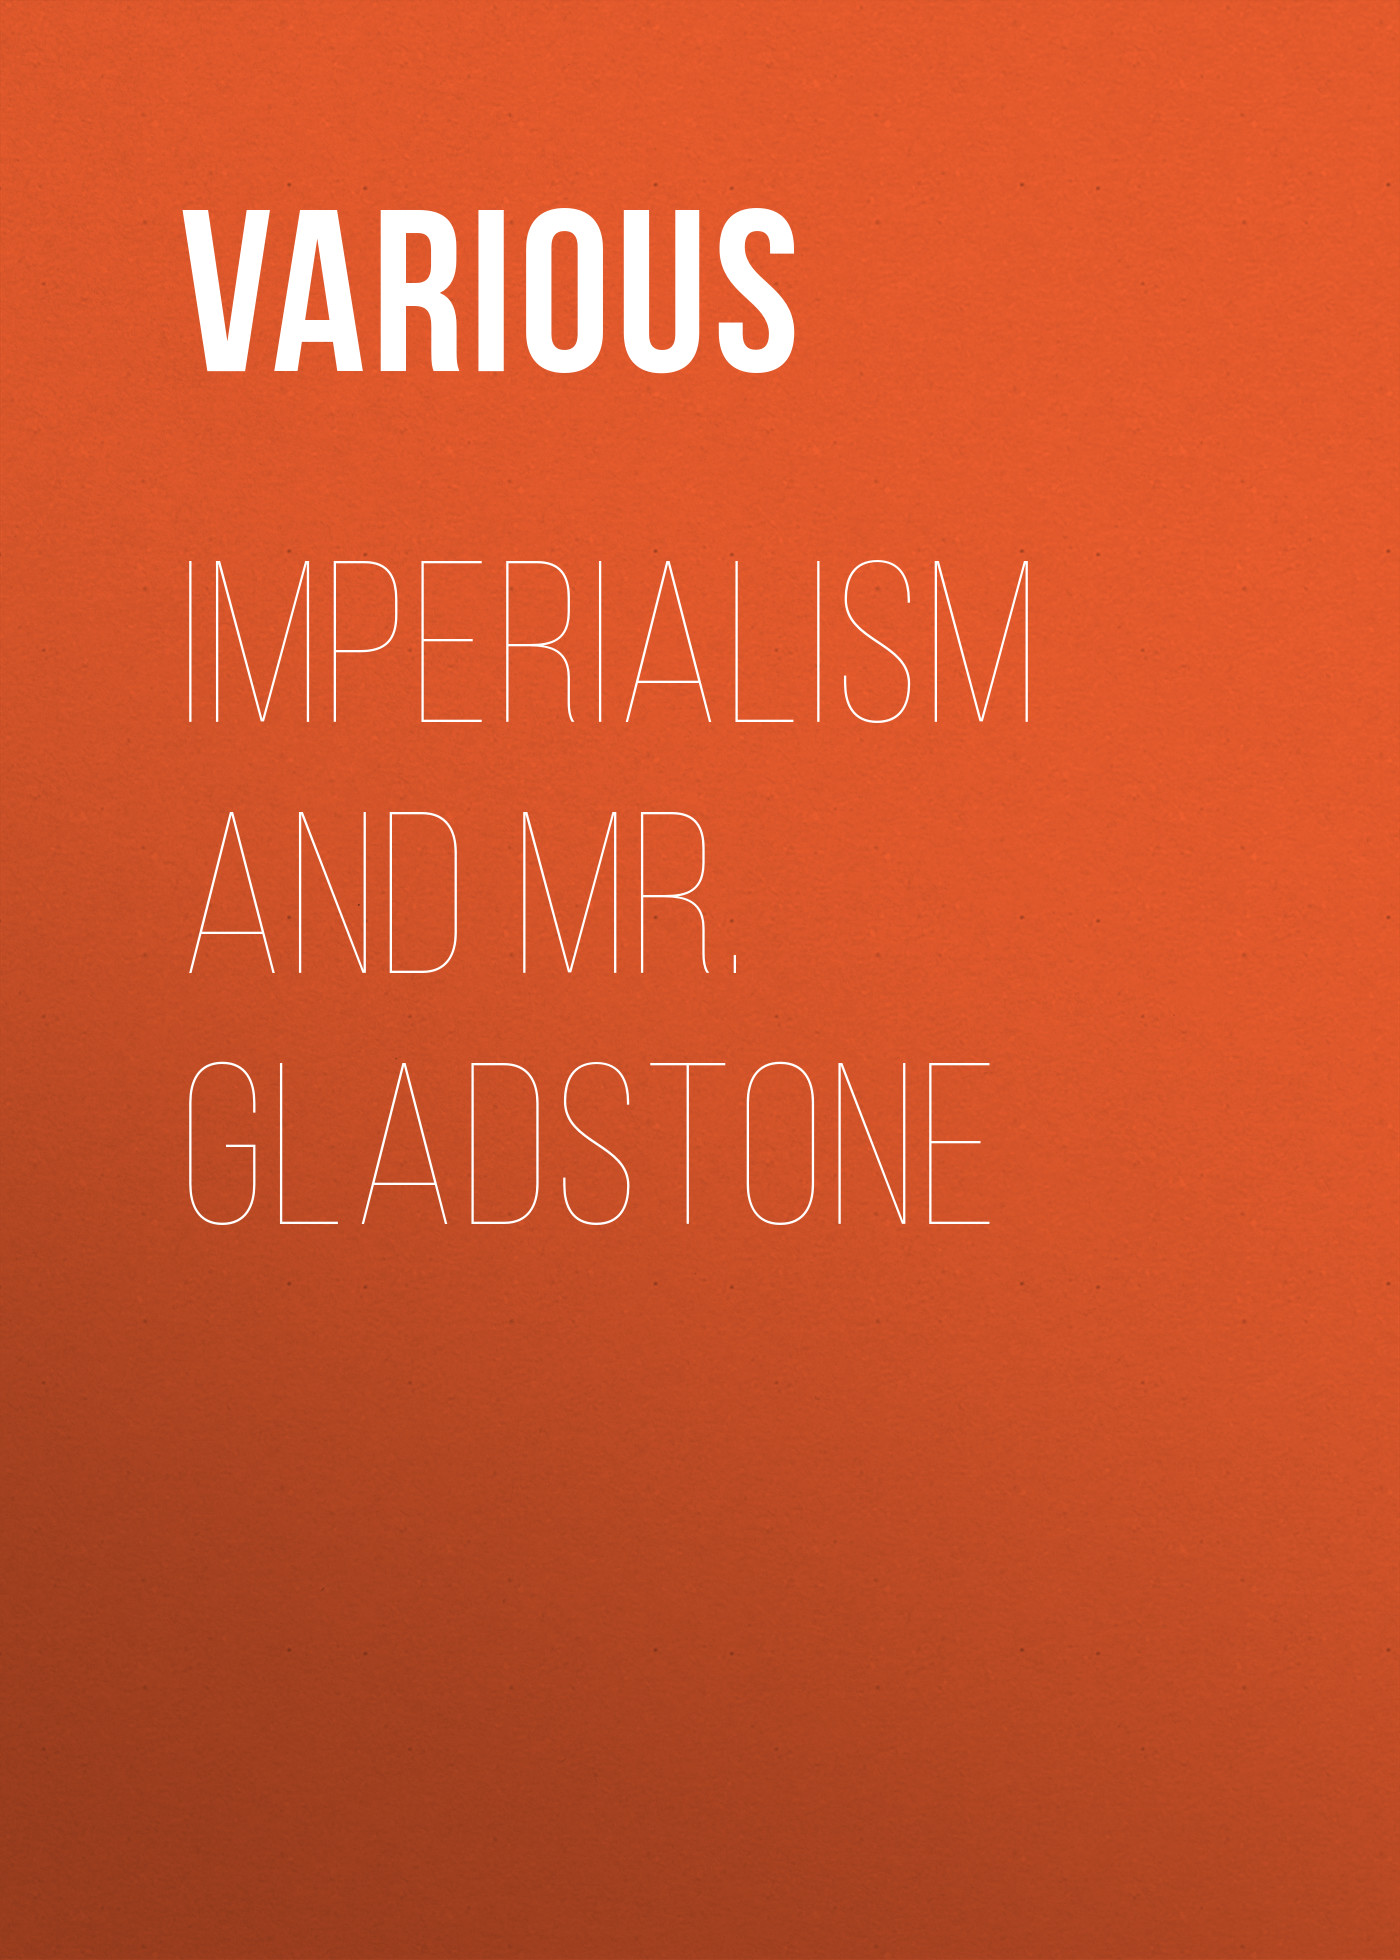 Книга Imperialism and Mr. Gladstone из серии , созданная  Various, может относится к жанру История, Зарубежная образовательная литература. Стоимость электронной книги Imperialism and Mr. Gladstone с идентификатором 25717135 составляет 0 руб.